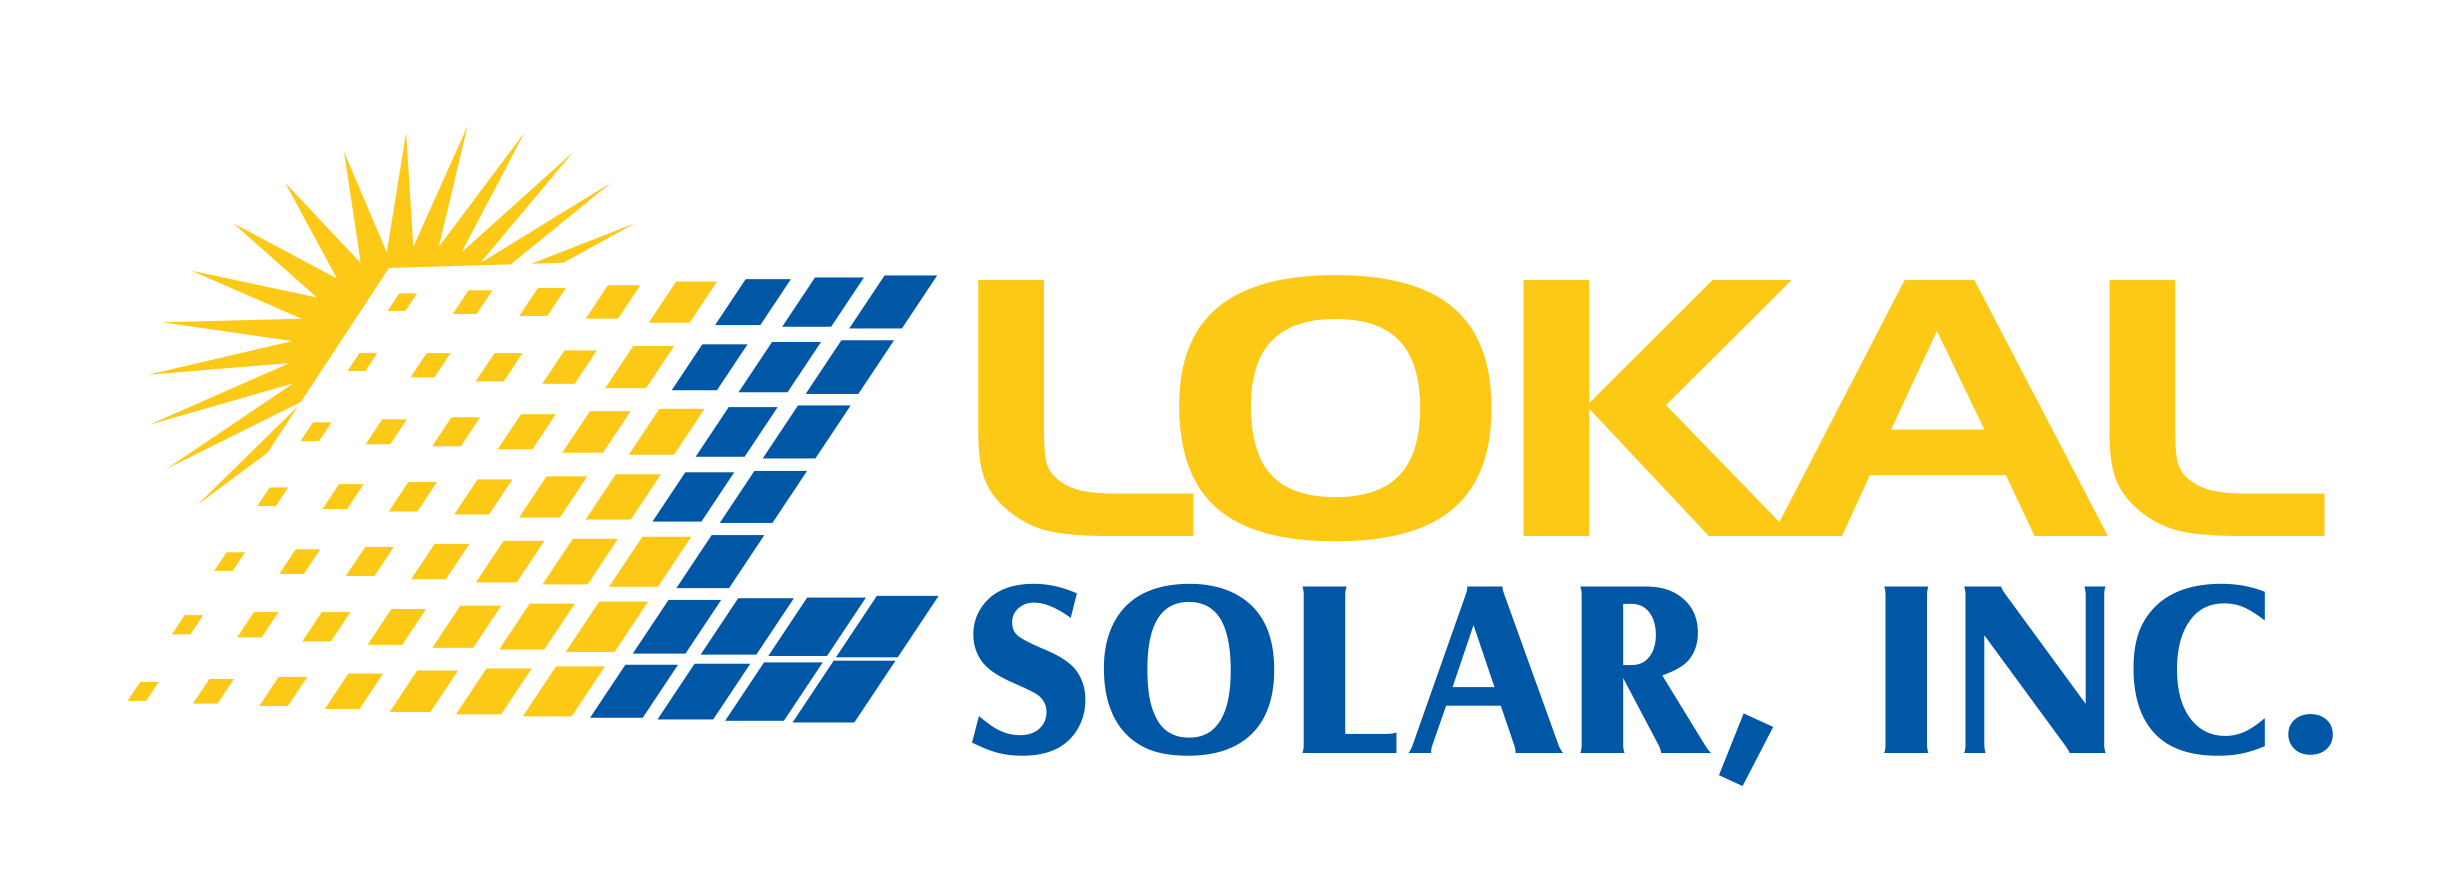 Lokal Solar inc